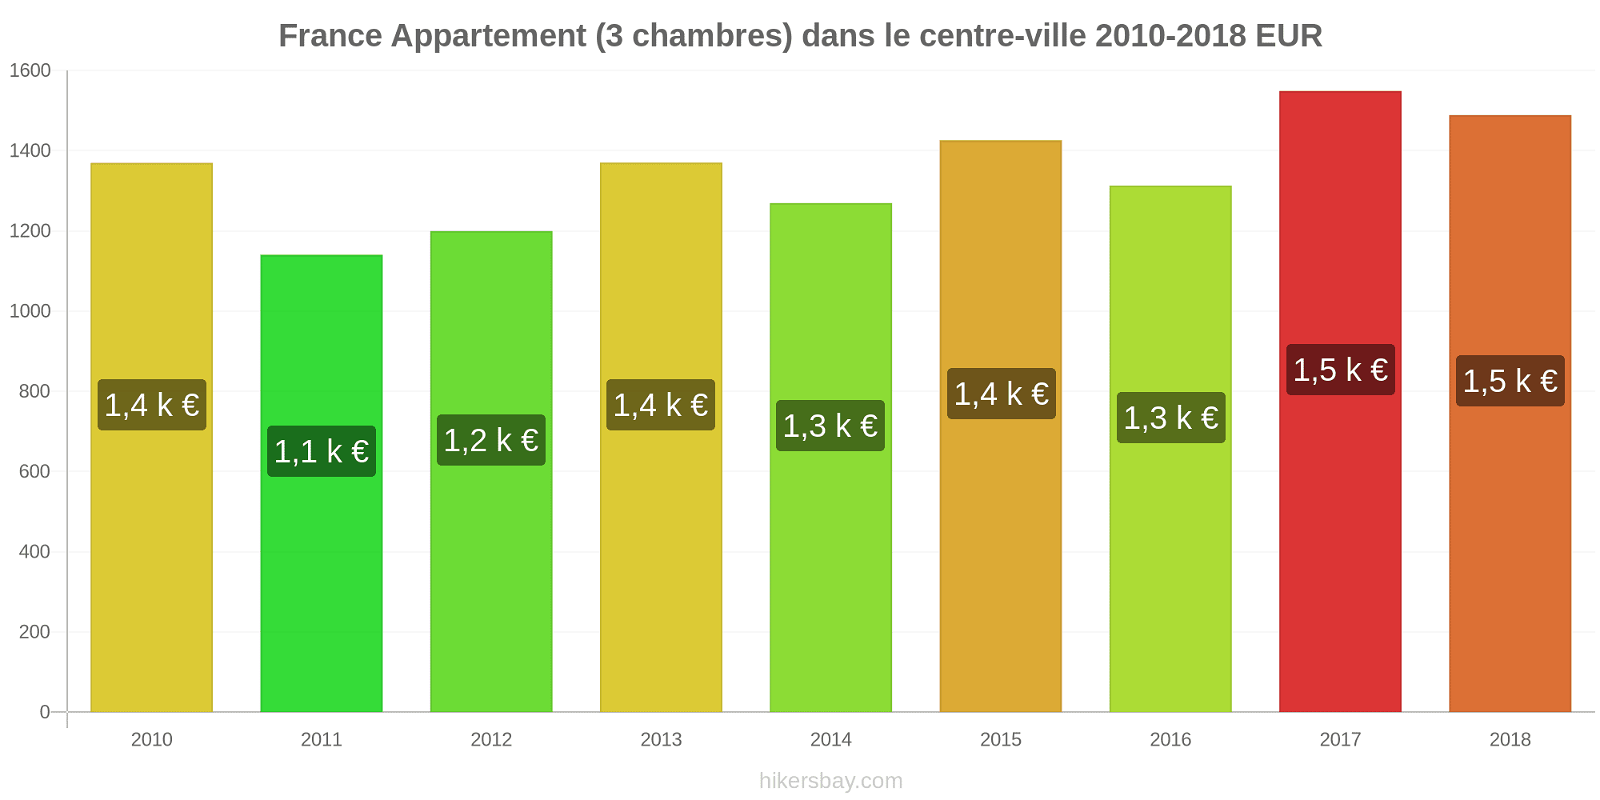 France changements de prix Appartement (3 chambres) dans le centre-ville hikersbay.com